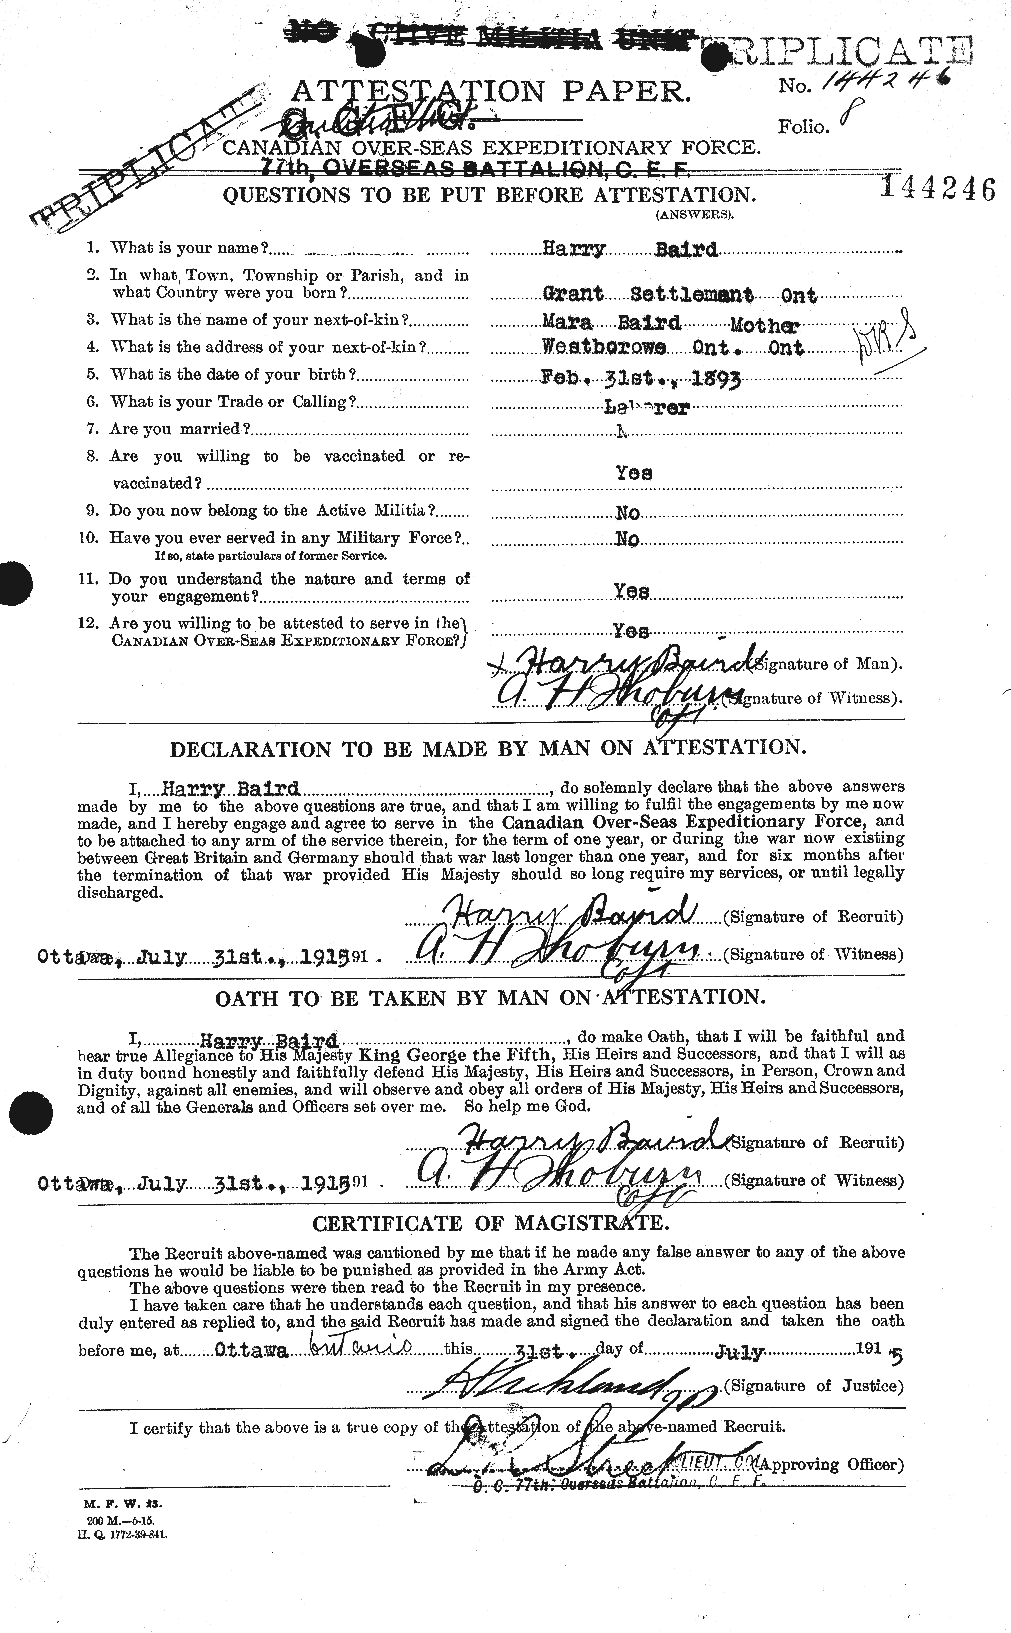 Dossiers du Personnel de la Première Guerre mondiale - CEC 226657a